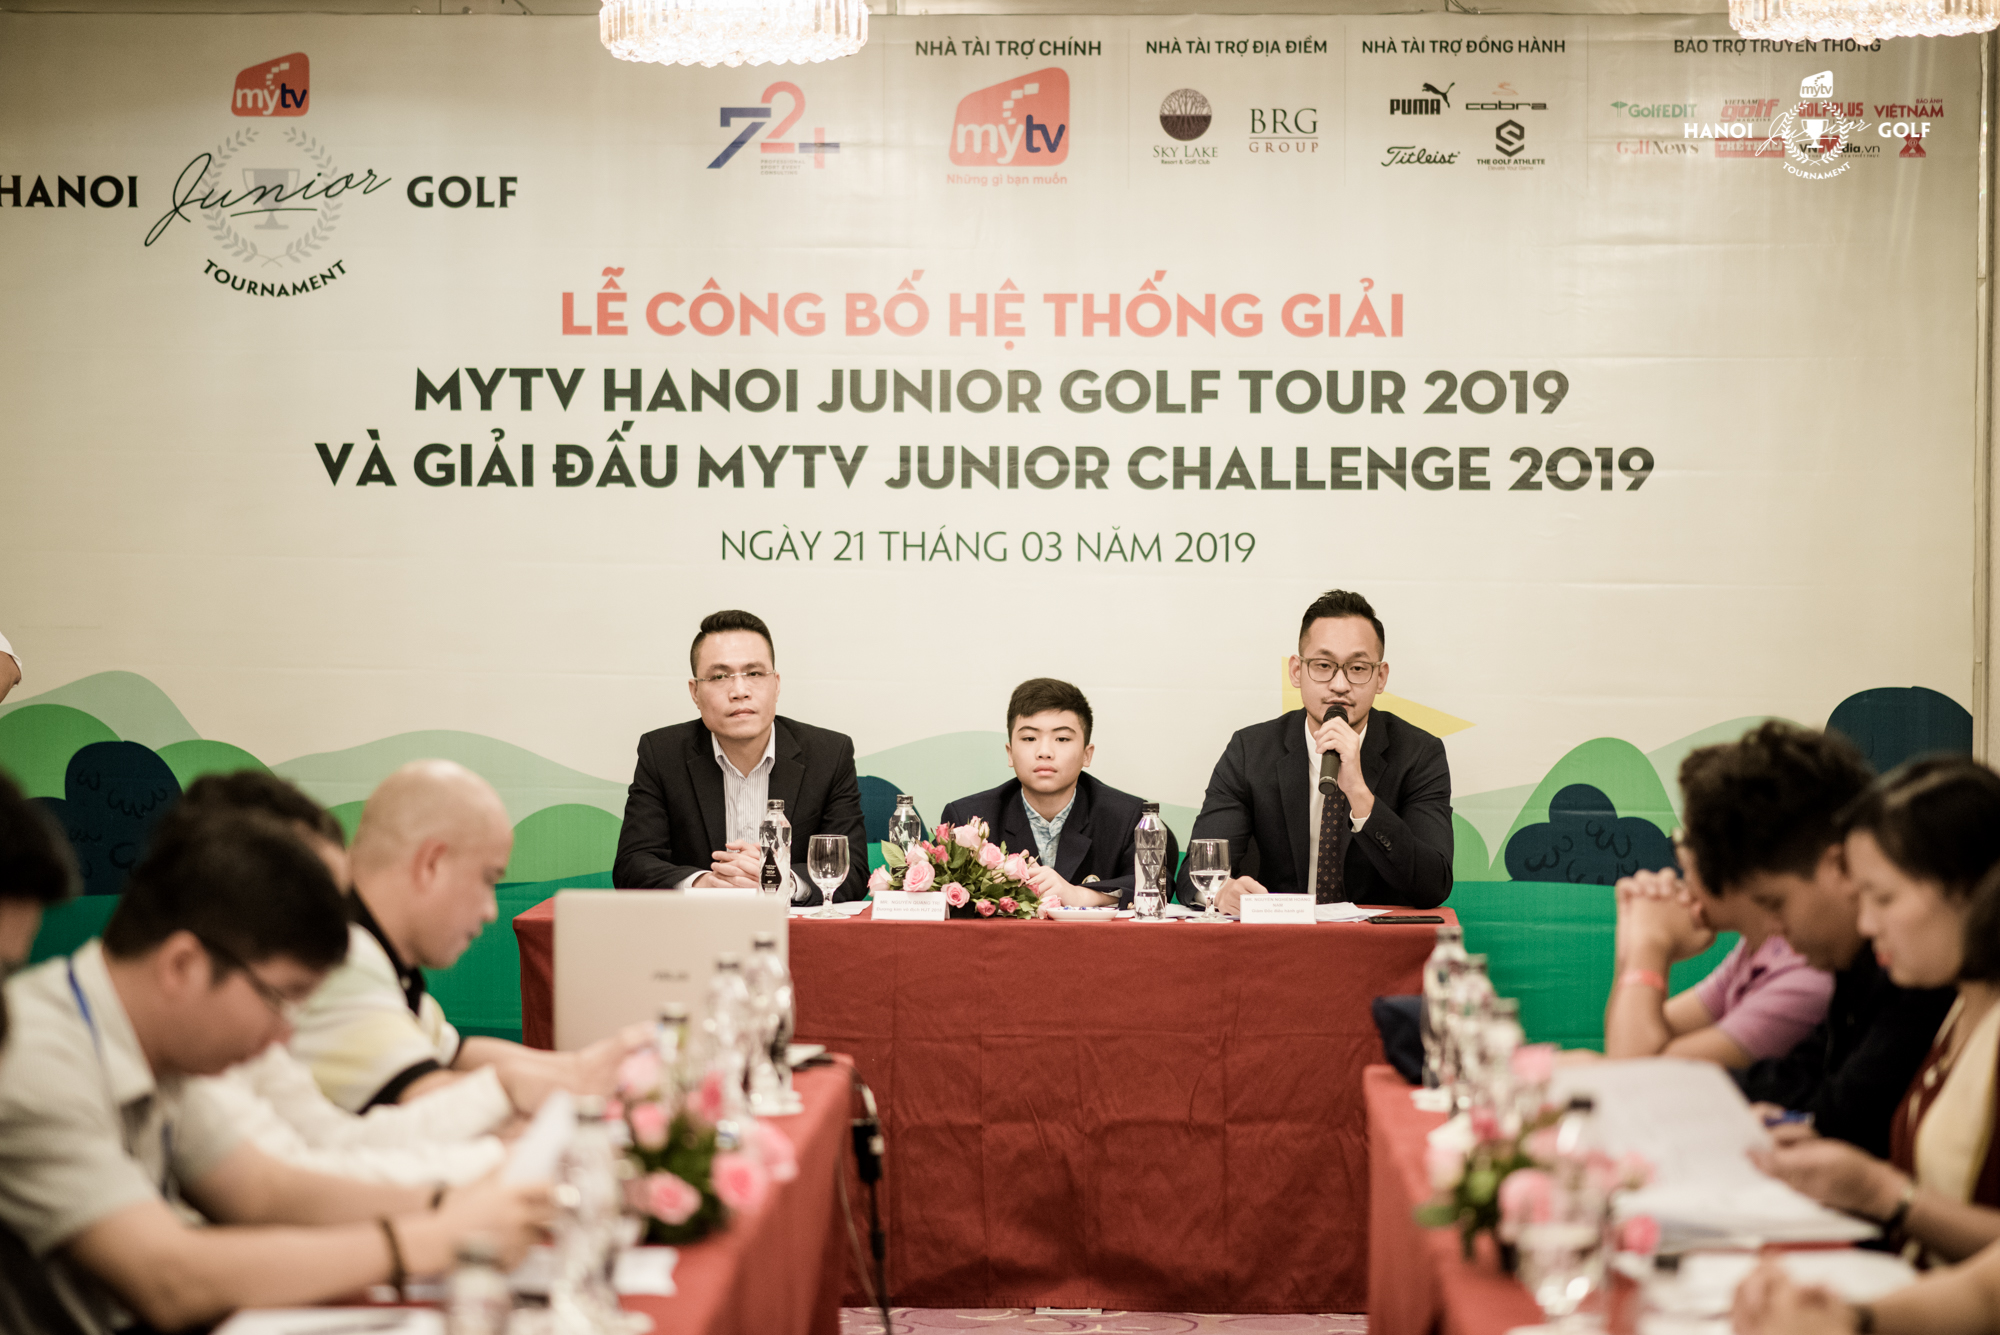 MyTV Hanoi Junior Golf Tour 2019 tiếp tục mùa 3 với nhiều thay đổi mới